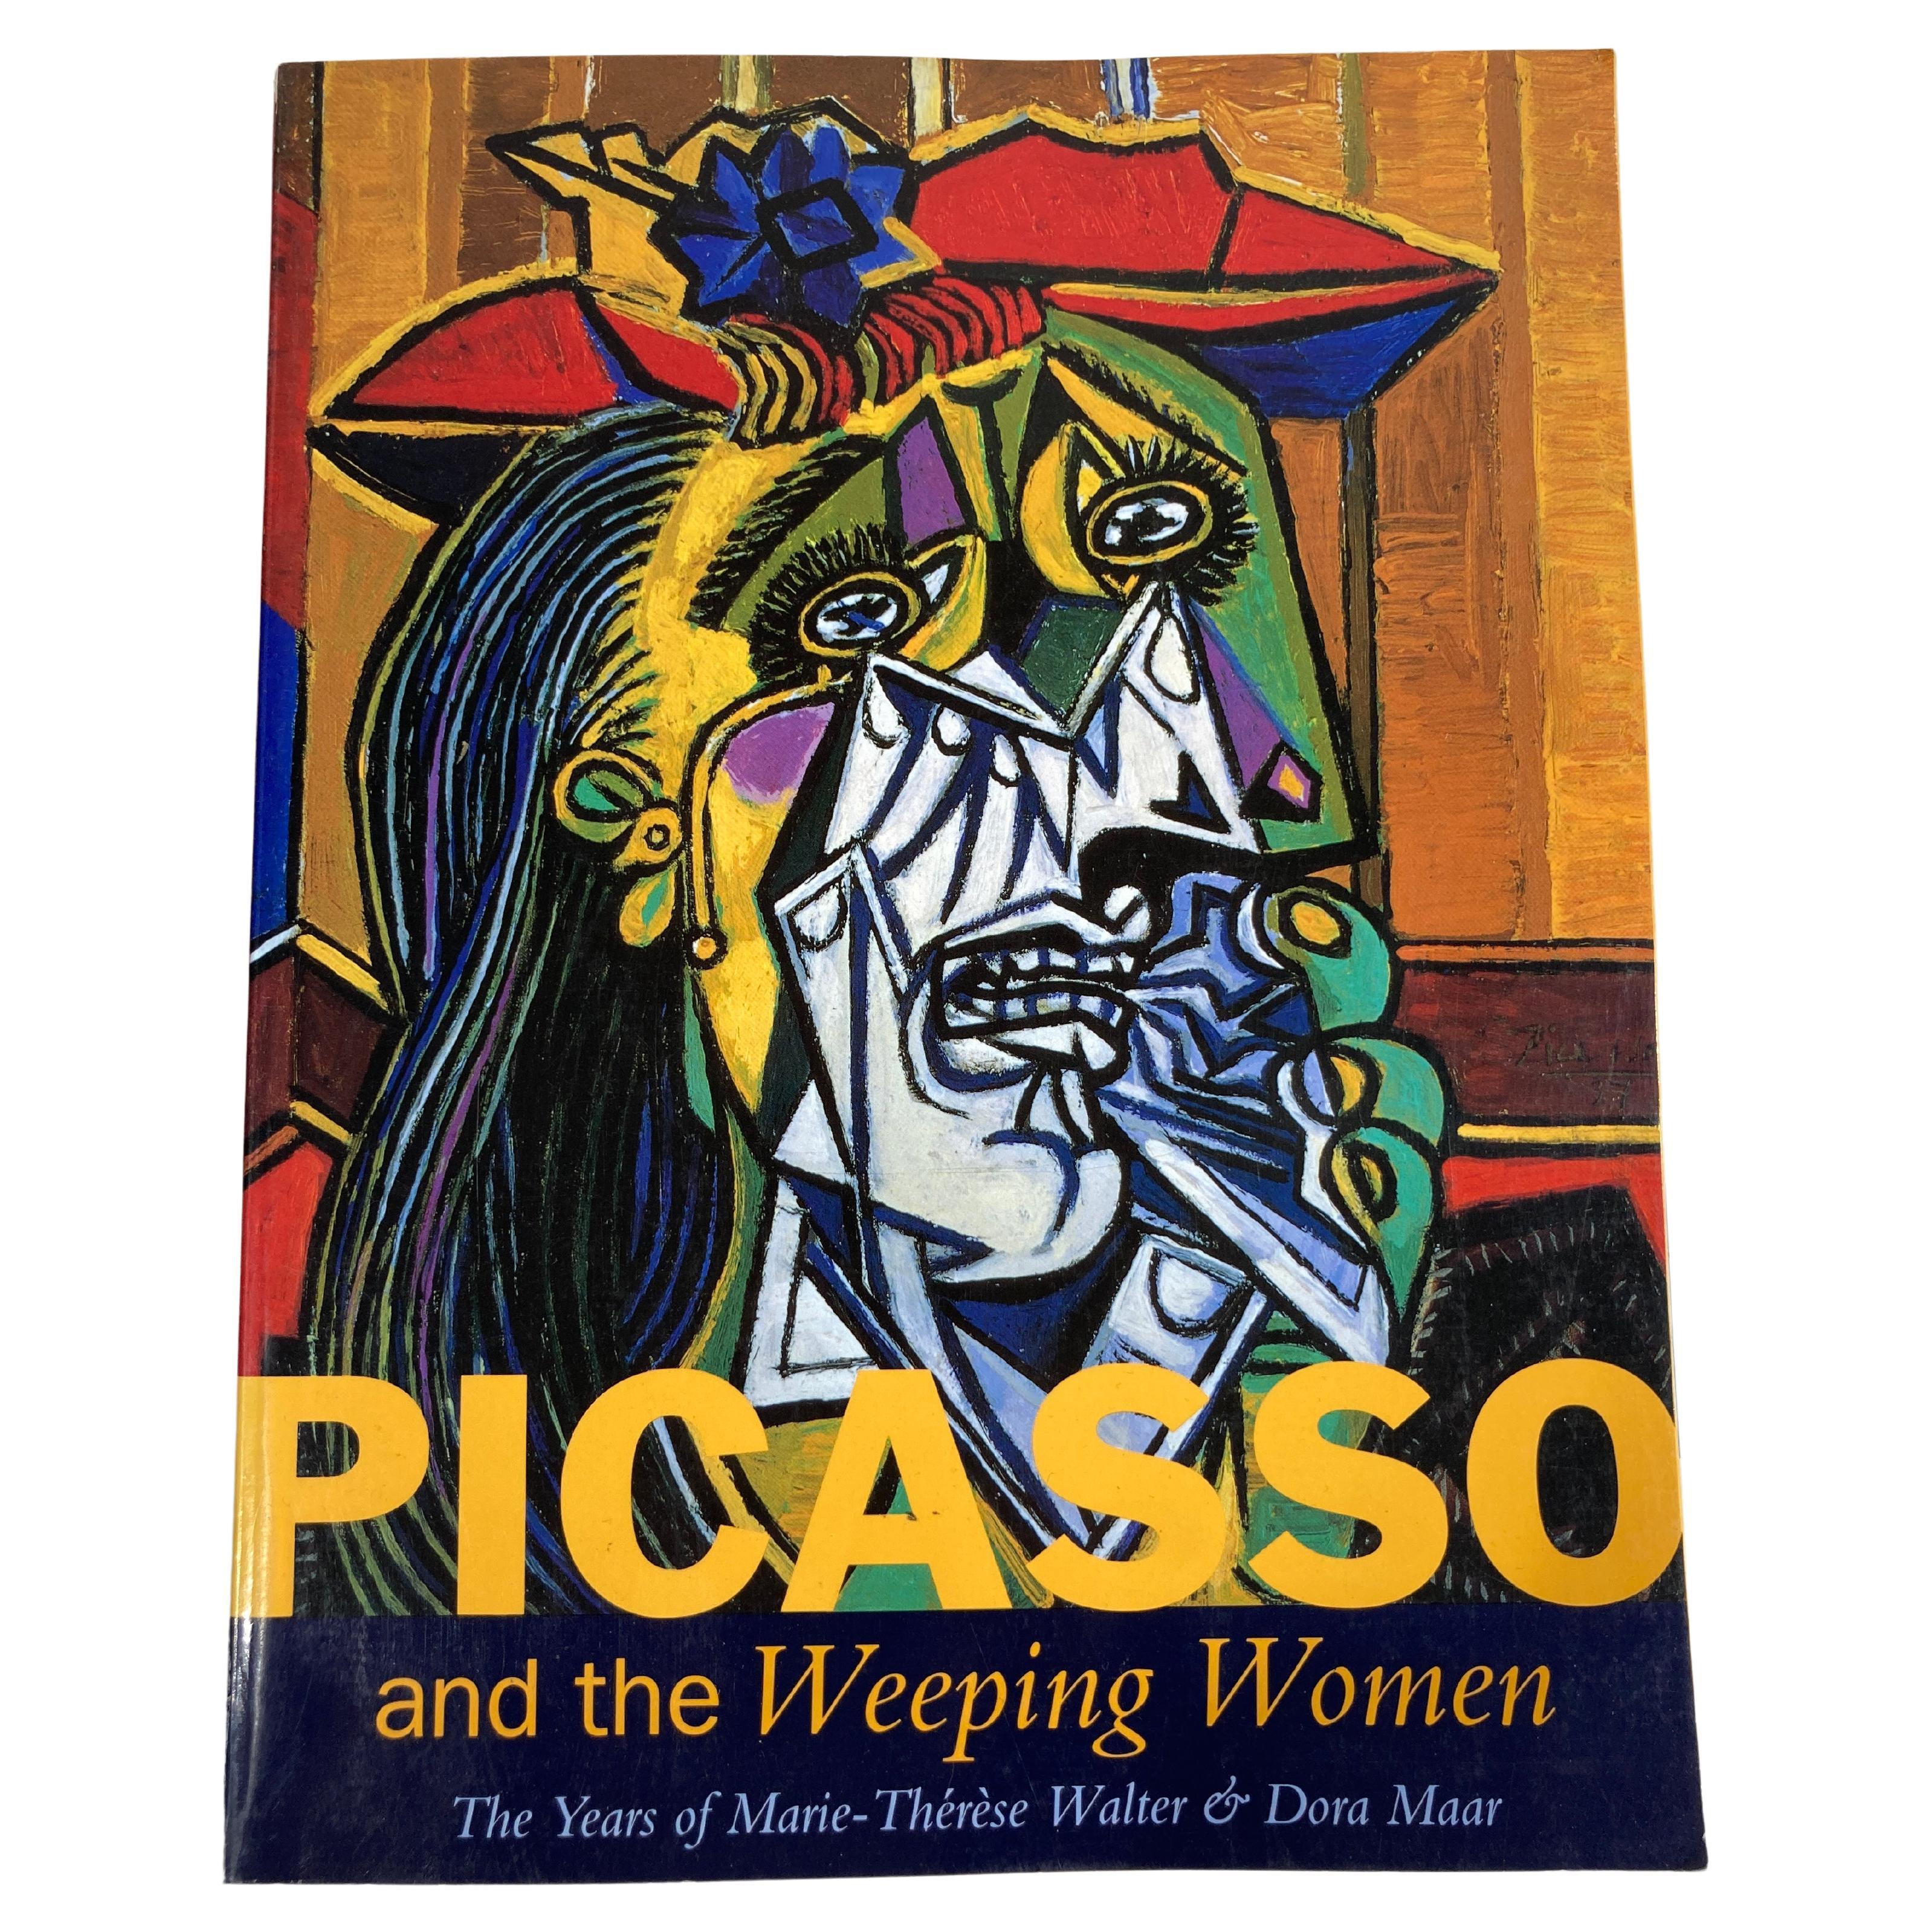 Picasso et les pleureuses, les années de Marie-Thérèse et Dora Maar Livre d'art par Judi Freeman.
Dans un livre qui examine le puissant corpus d'œuvres dans lequel Picasso a développé son puissant et déchirant motif de la femme en pleurs, le texte